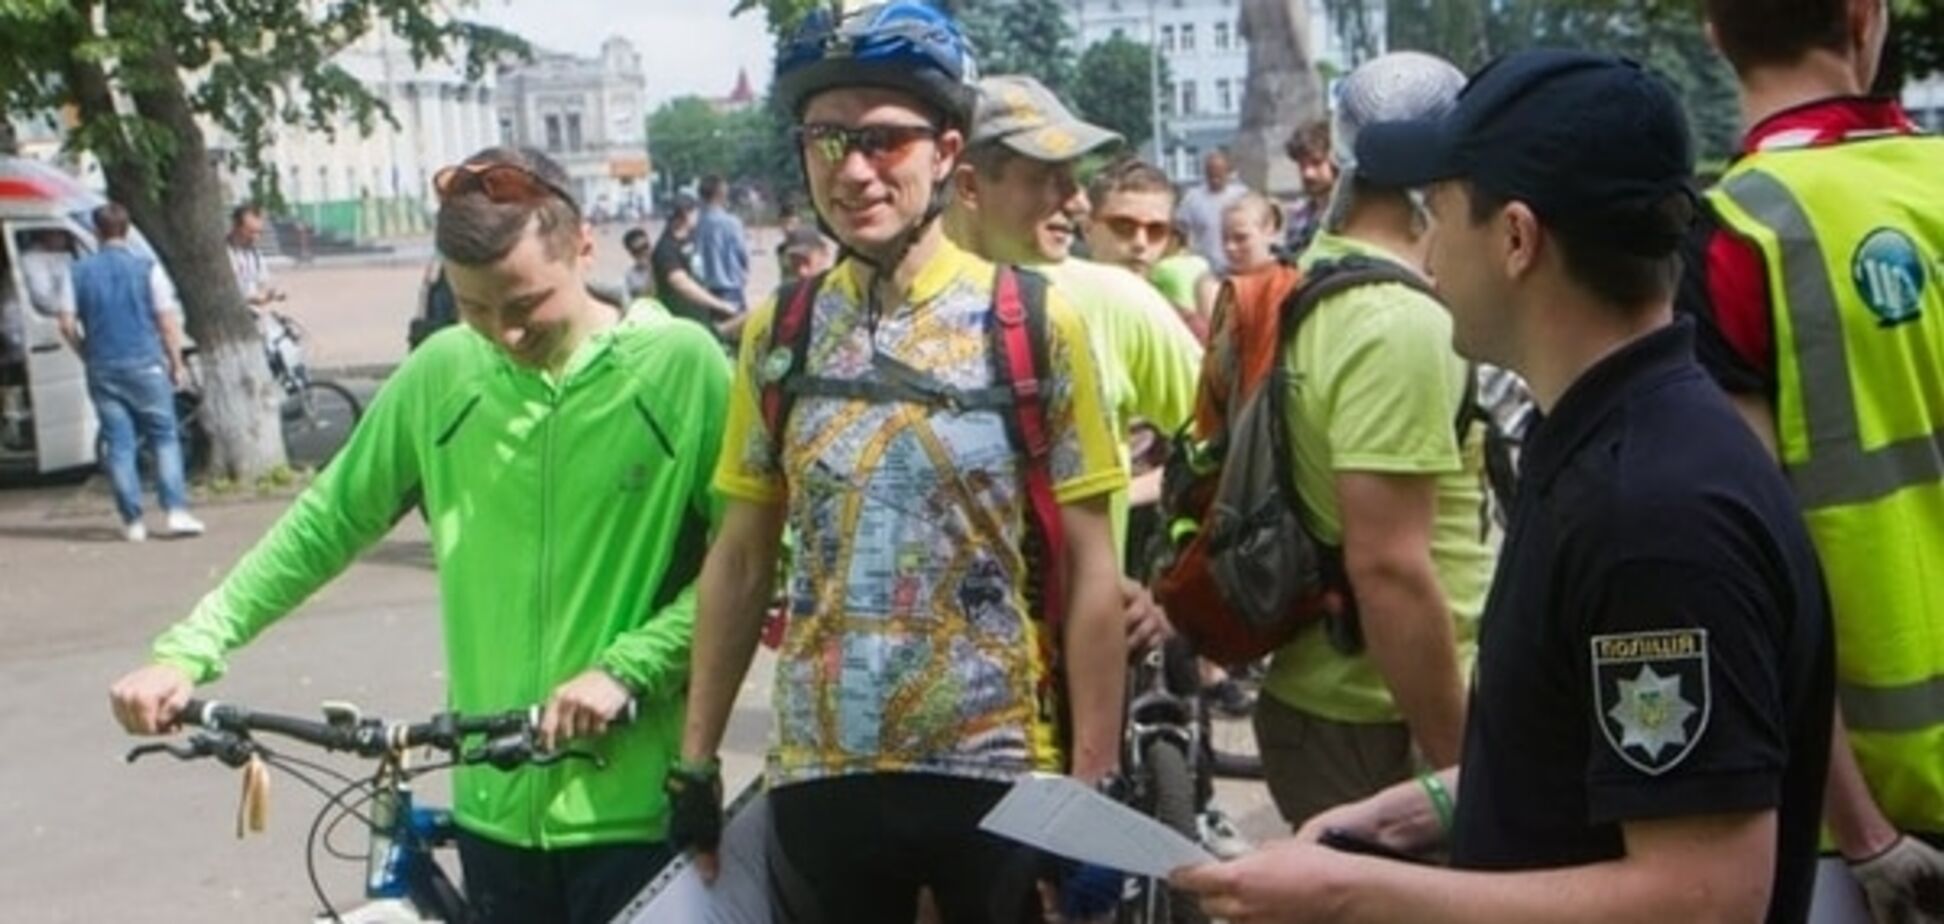 Велодень в Житомире: тысяча велосипедистов заполонили центр города. ФОТО. ВИДЕО